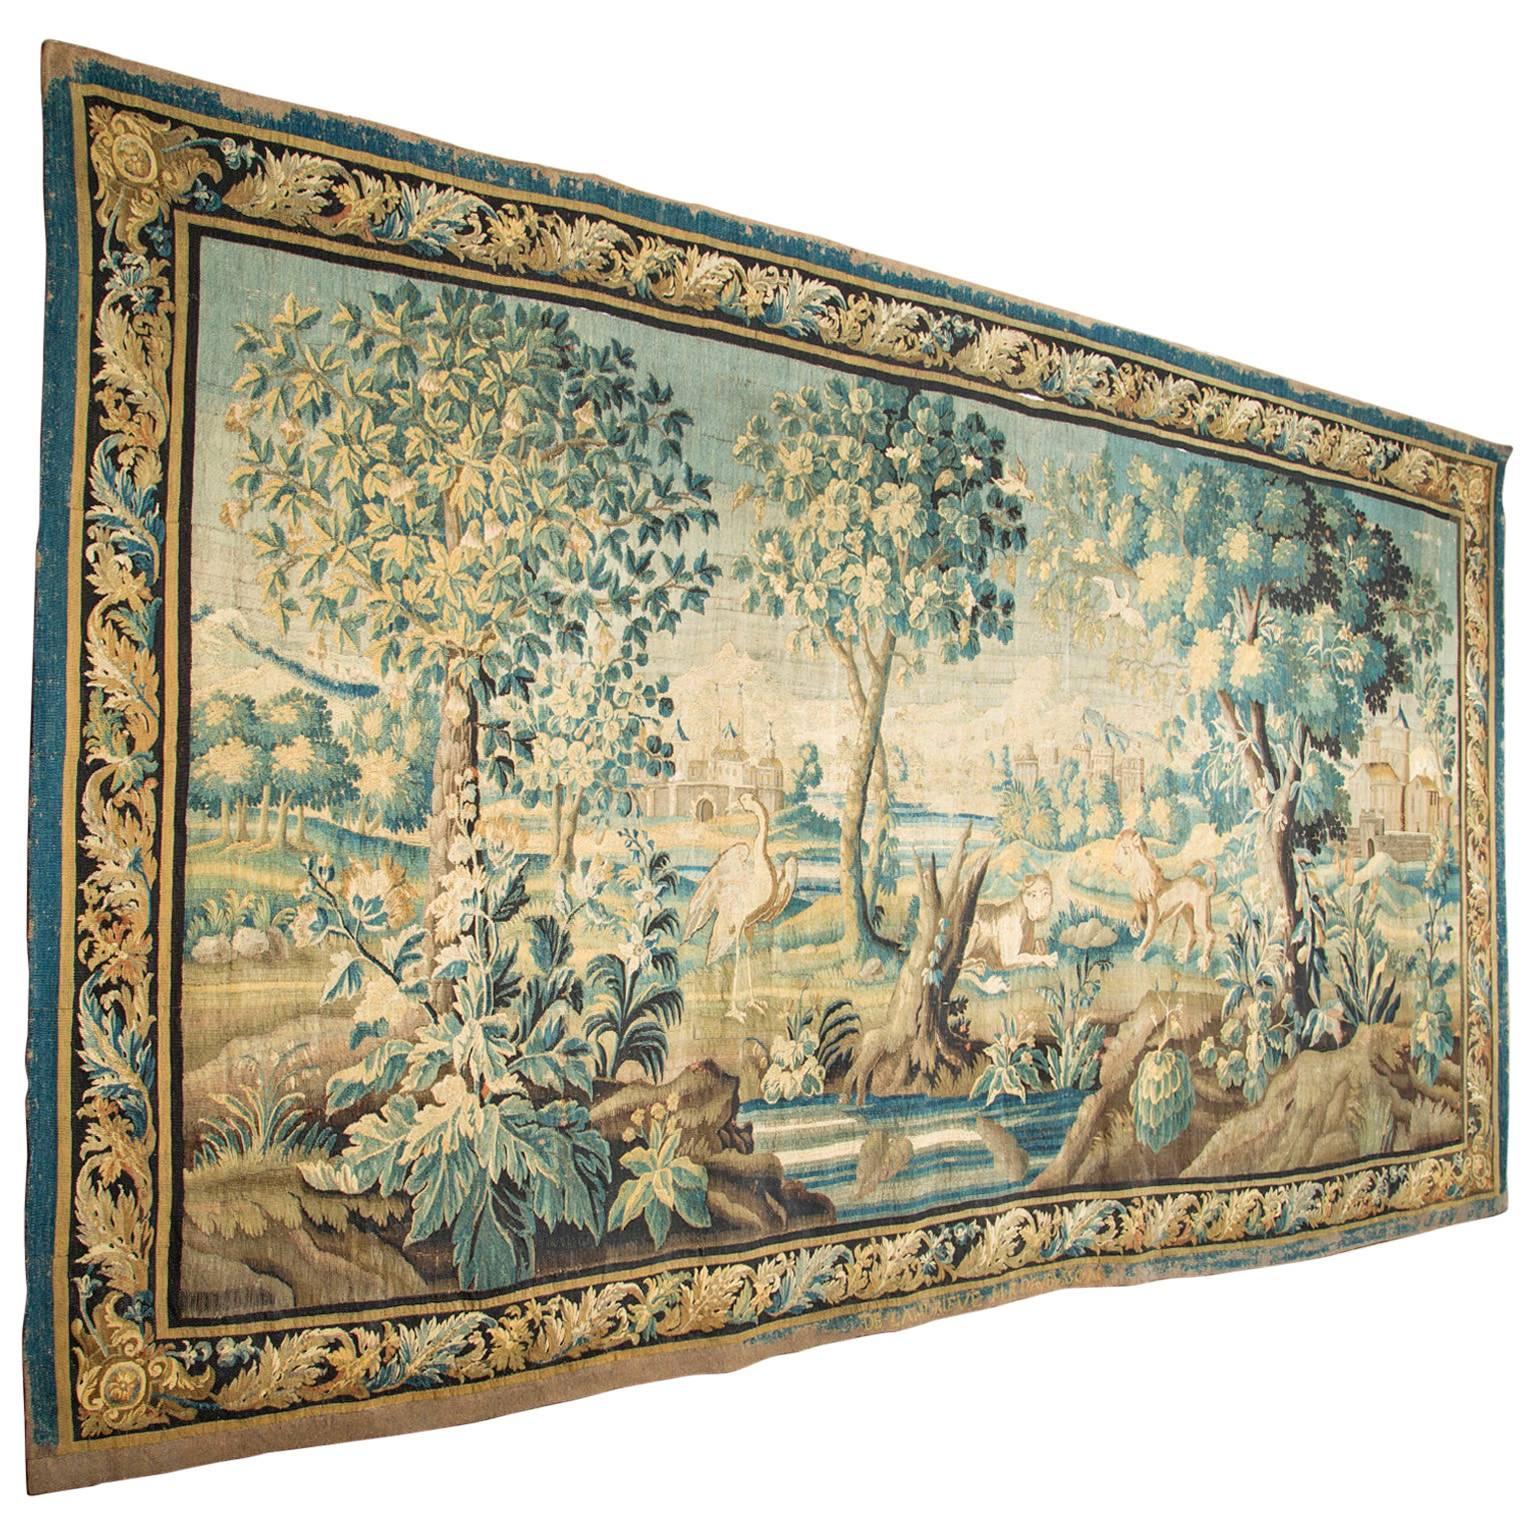 18th Century Aubusson Tapestry signed “De Landrieve” & M R D”Aubusson” For Sale